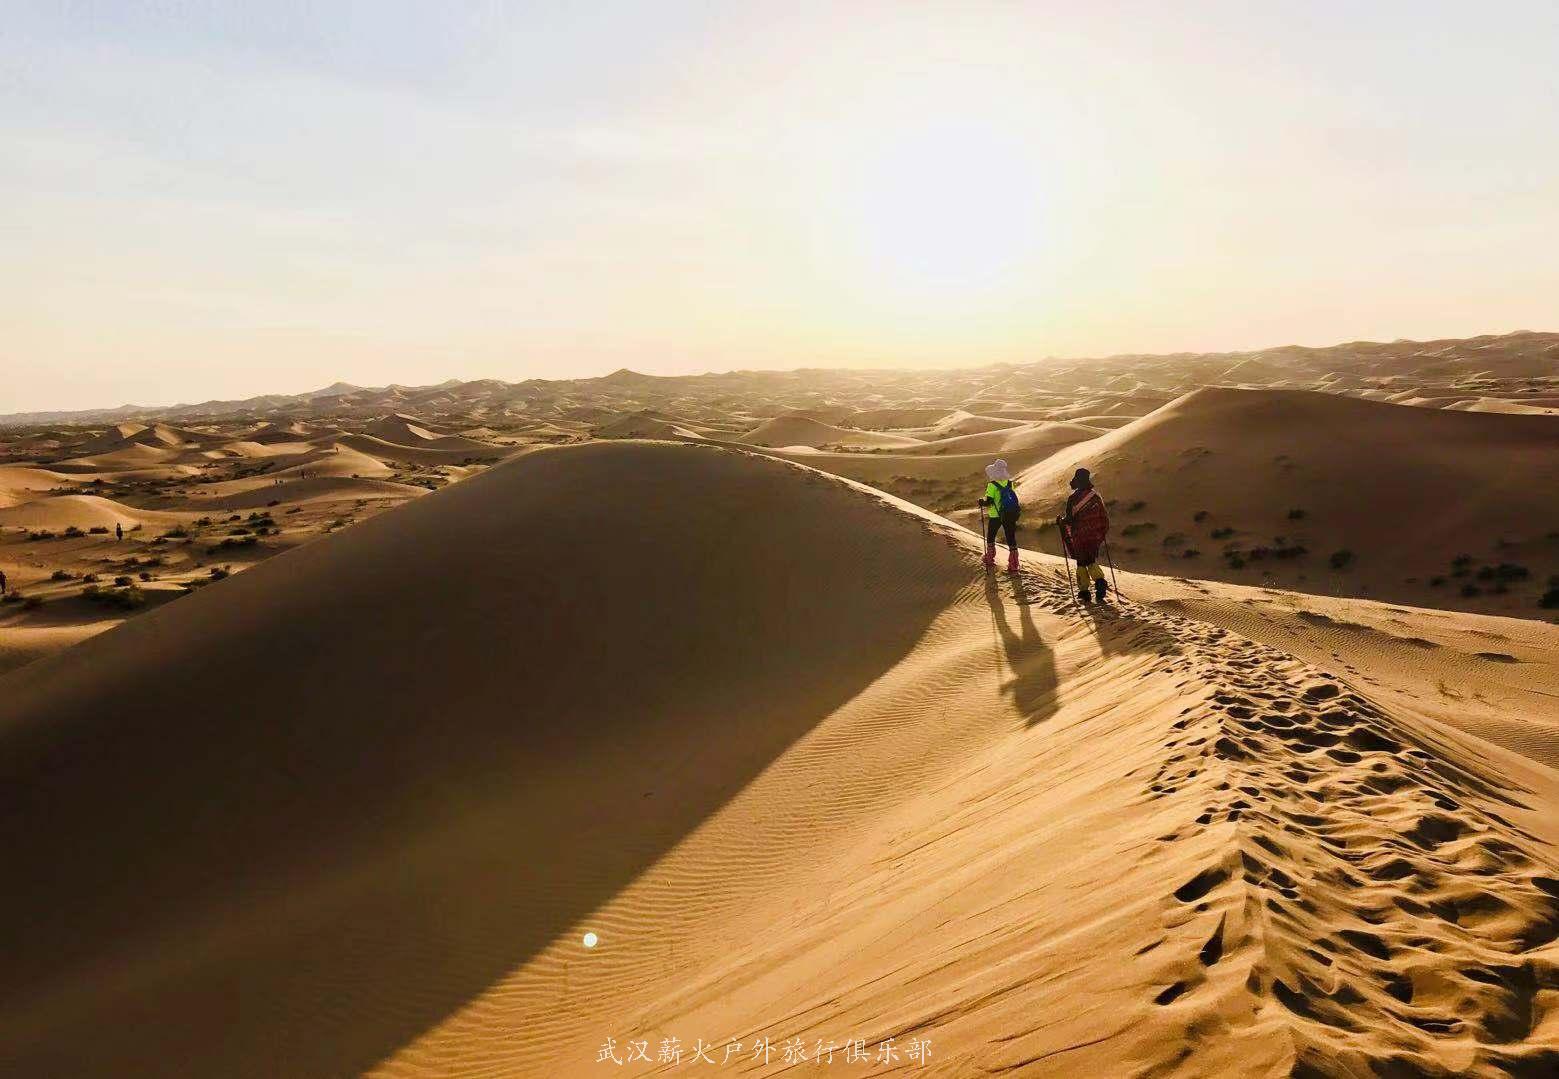 五一假期 | 大漠行者:远征腾格里沙漠,穿越五大湖,赏最美沙漠星空!